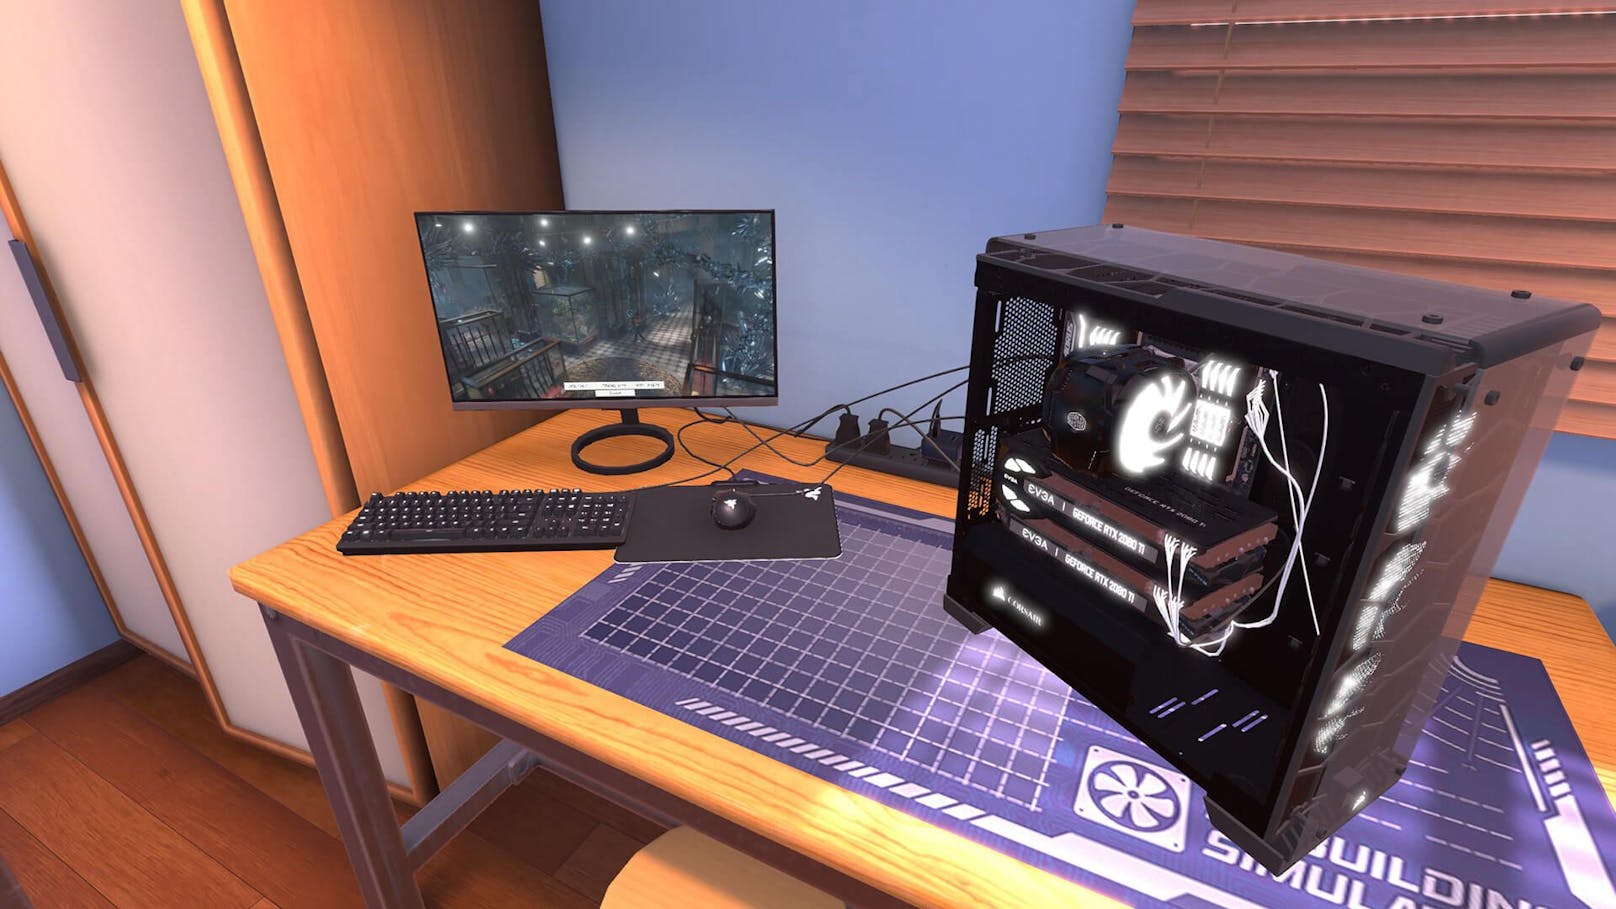 PC Building Simulator wurde innerhalb der ersten 3 Stunden im Epic Games Store über 1 Million Mal heruntergeladen.